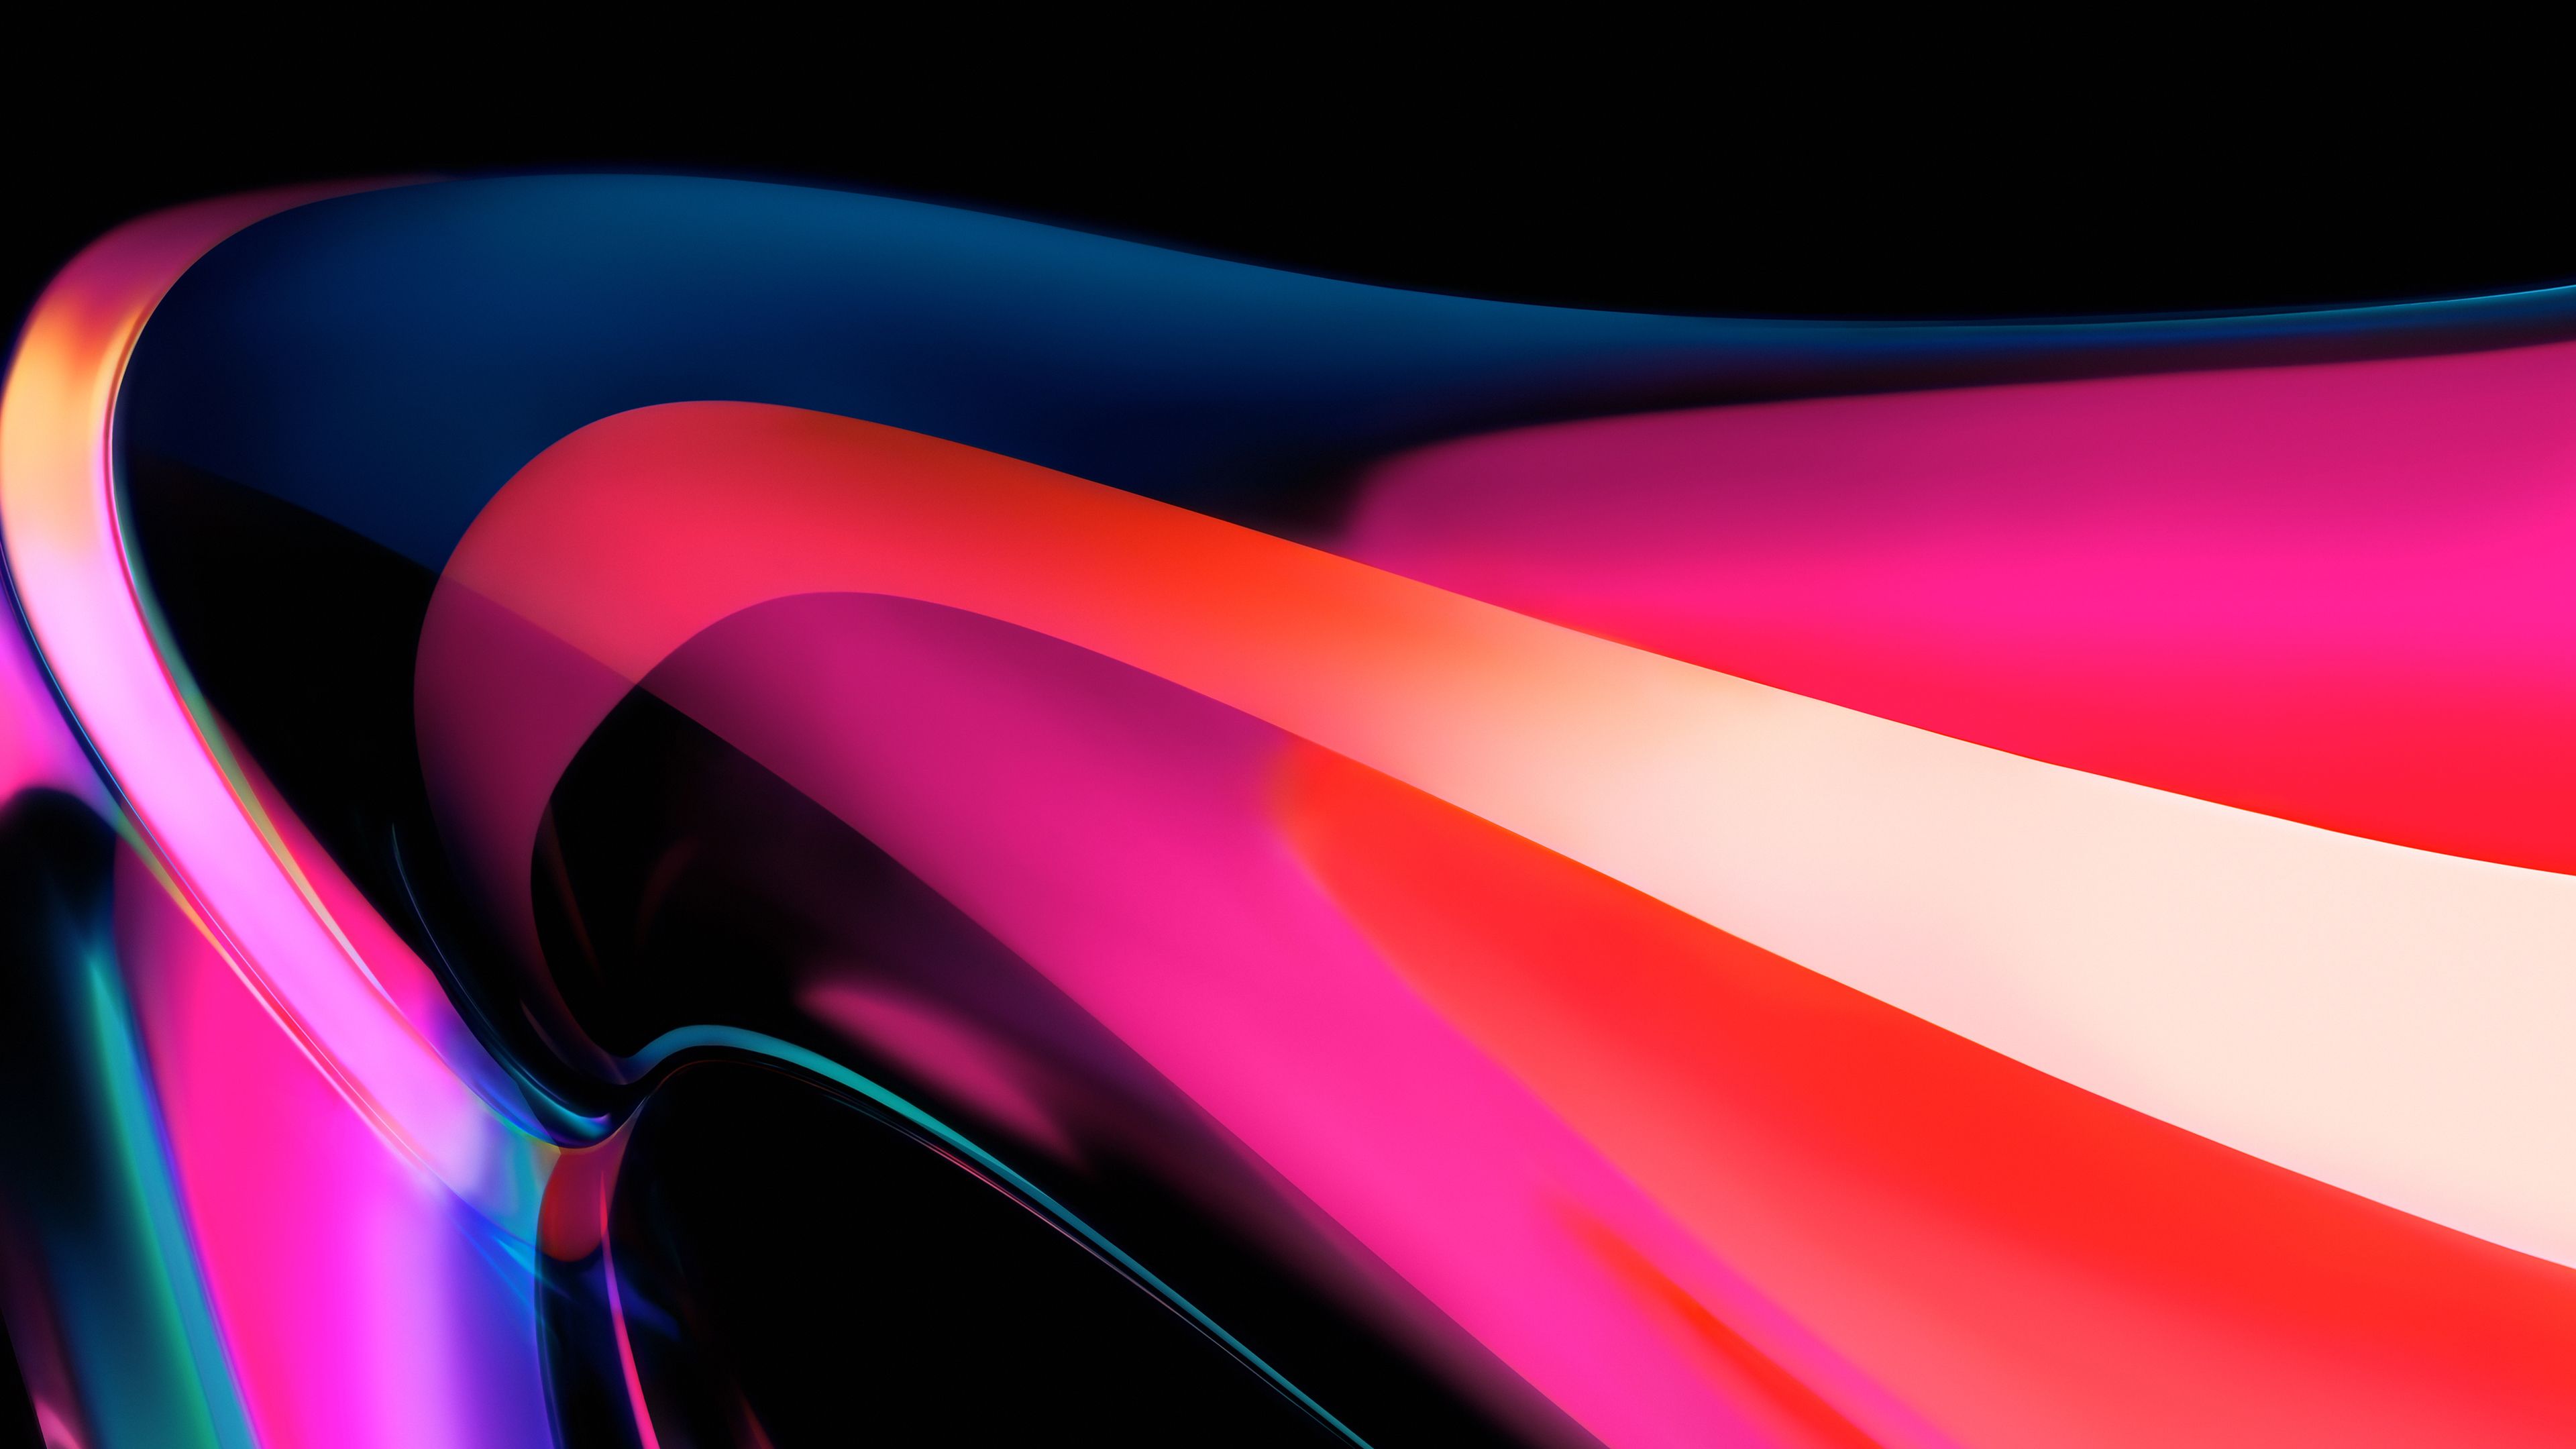 Mời tải hình nền siêu đẹp của iMac 24 inch 2021 mới ra mắt   Fptshopcomvn